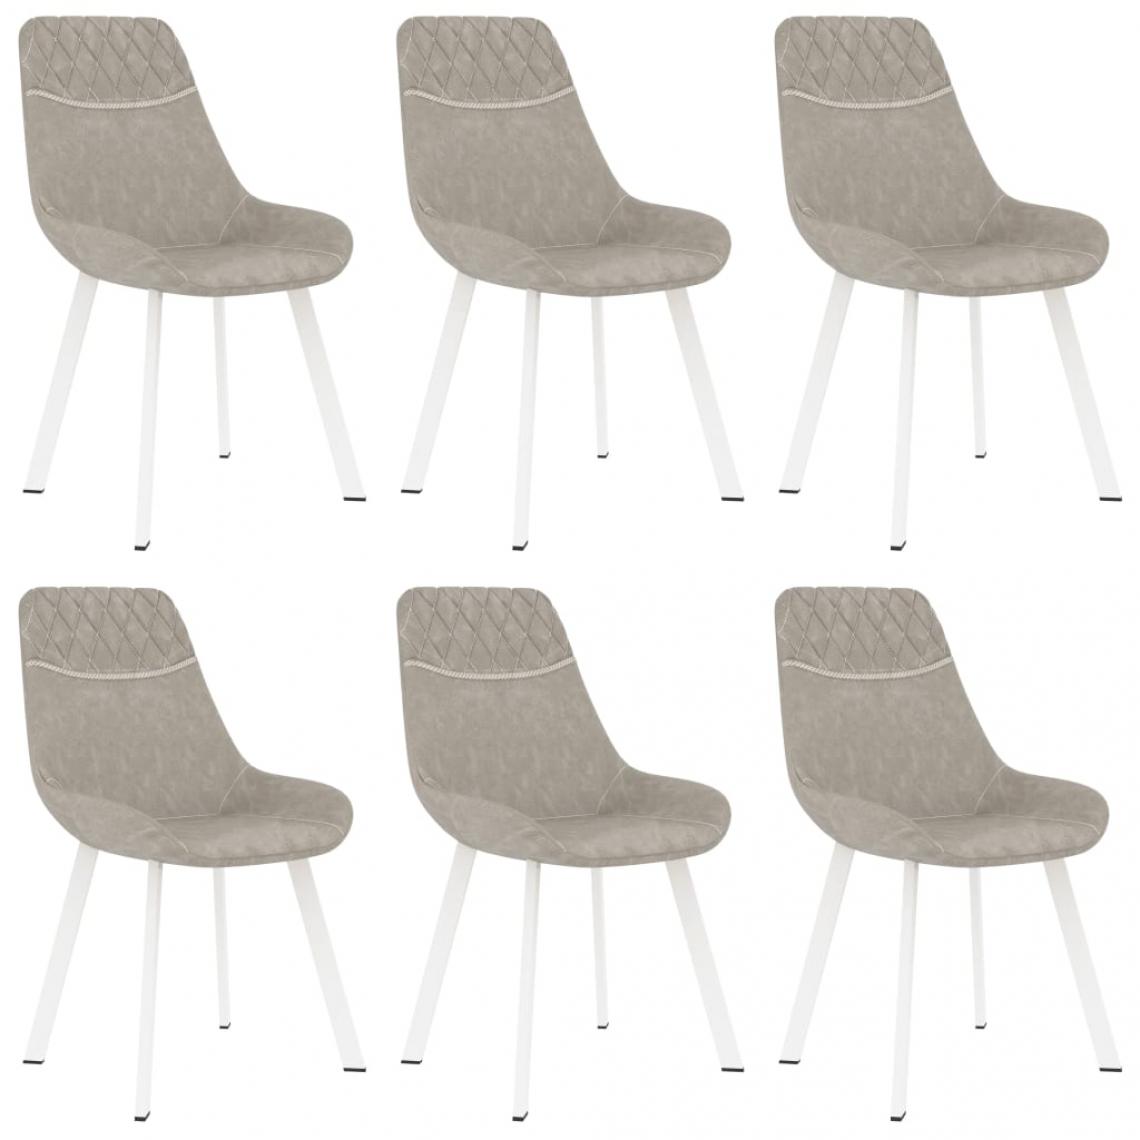 Decoshop26 - Lot de 6 chaises de salle à manger cuisine design moderne similicuir gris clair CDS022400 - Chaises